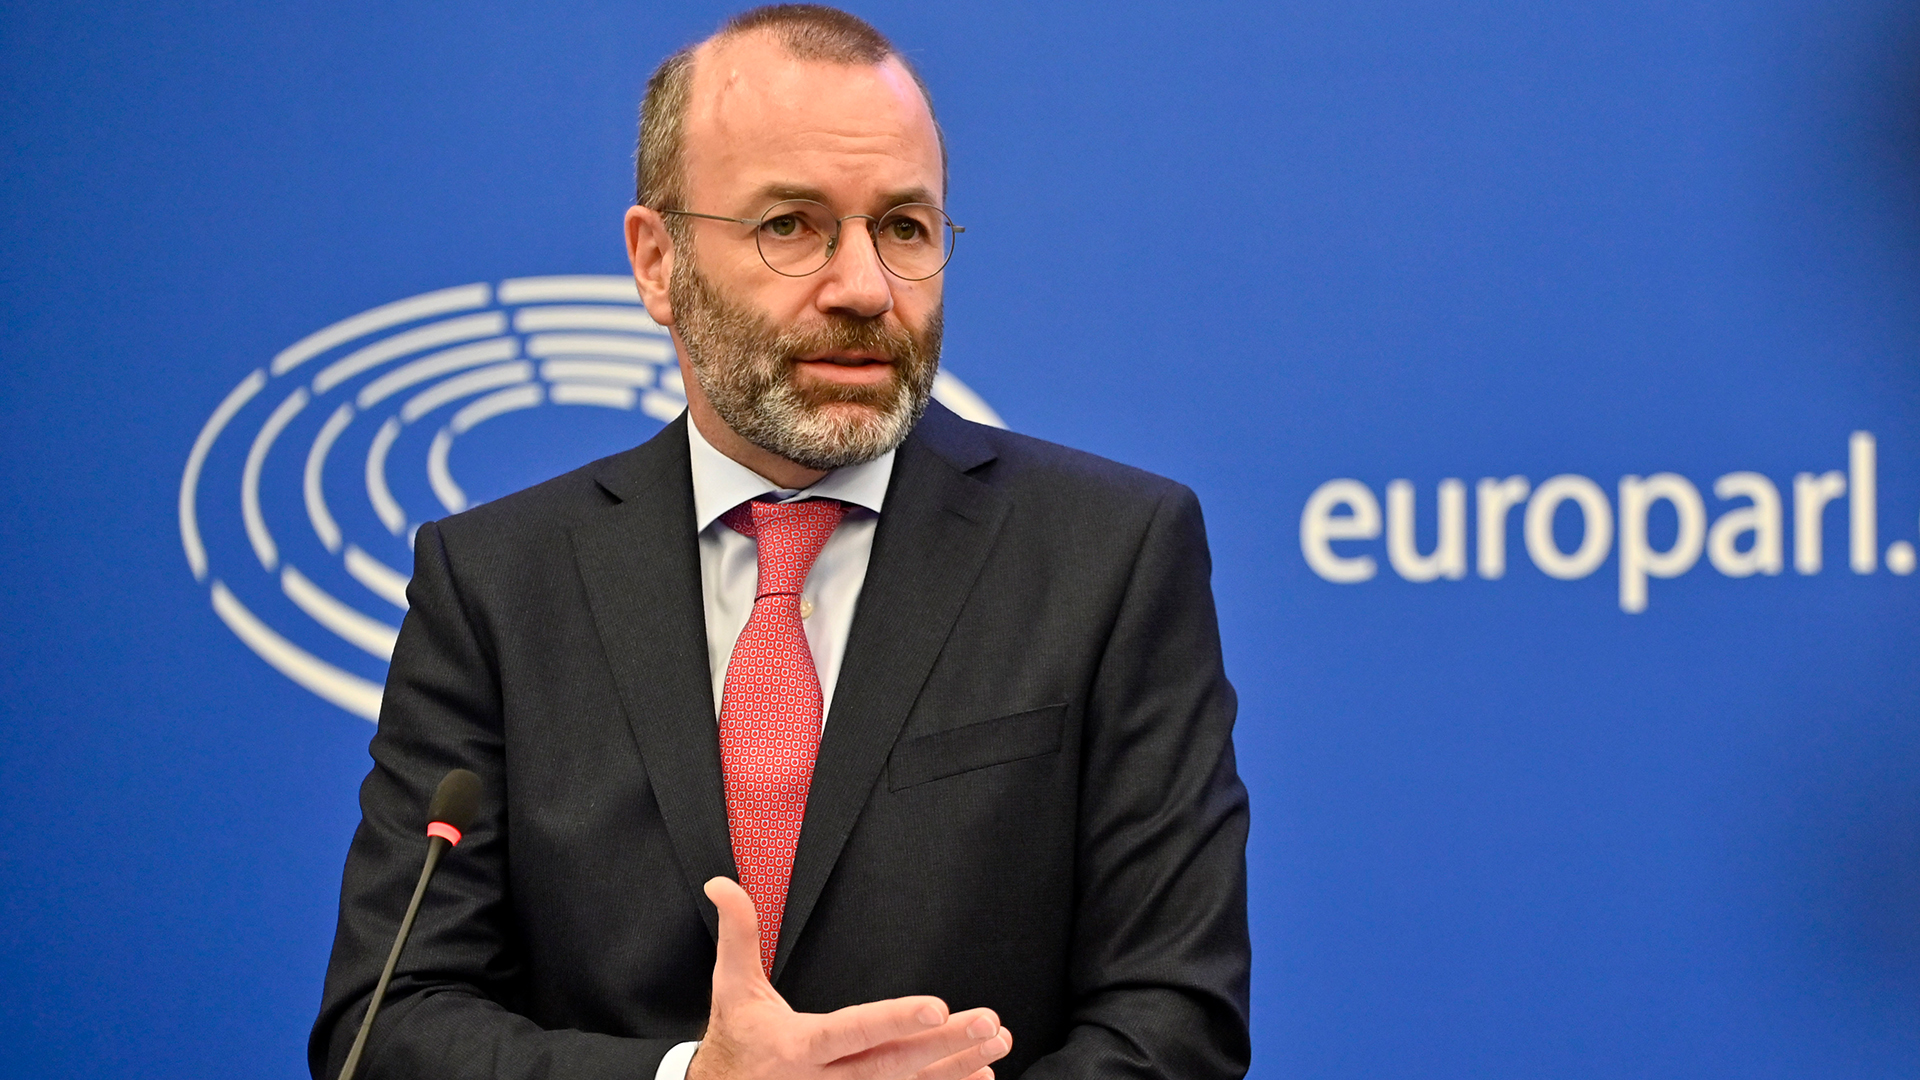 EVP-Chef zu EU-Sanktionen: "Wir brauchen jetzt den Befreiungsschlag"